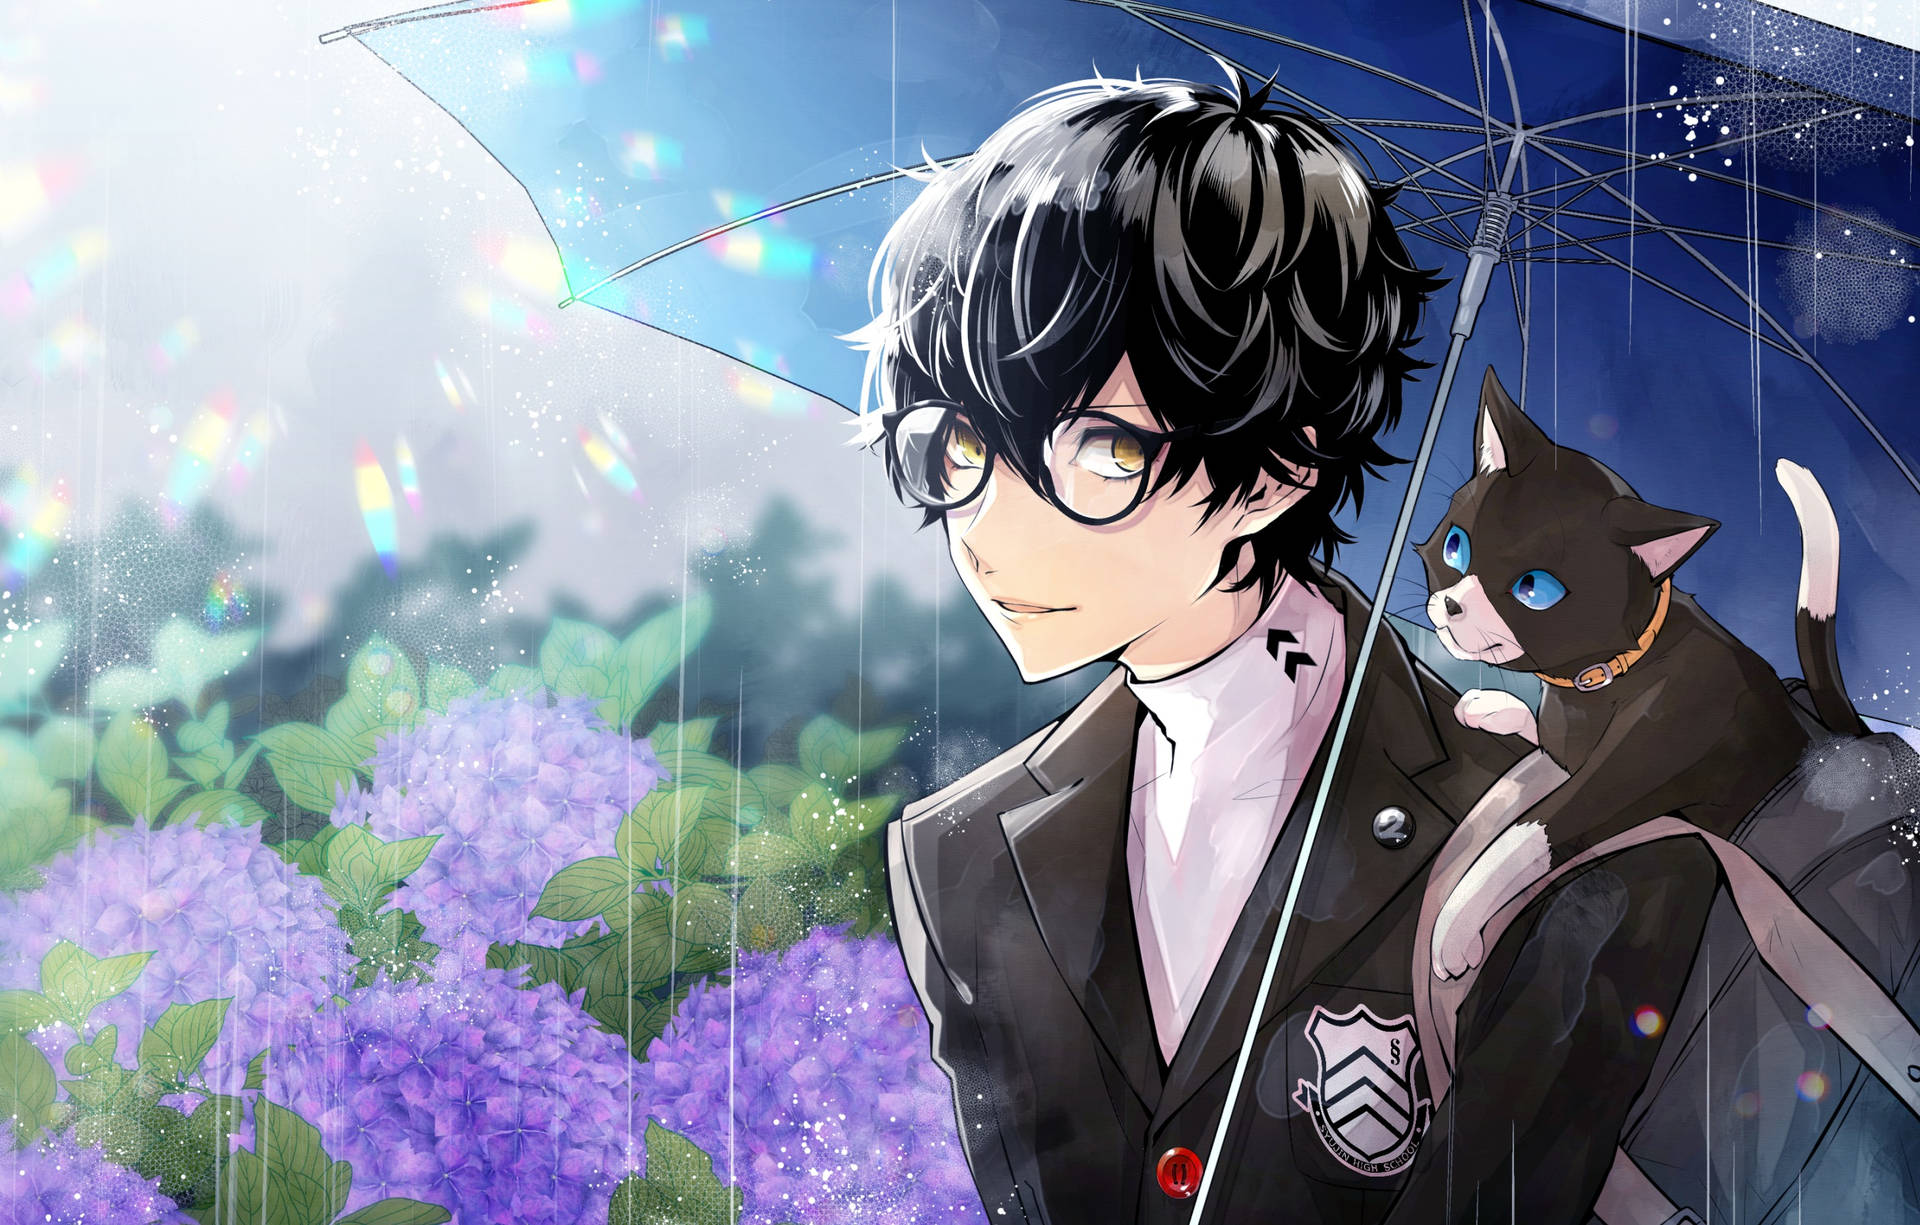 Ren Amamiya With Umbrella Background